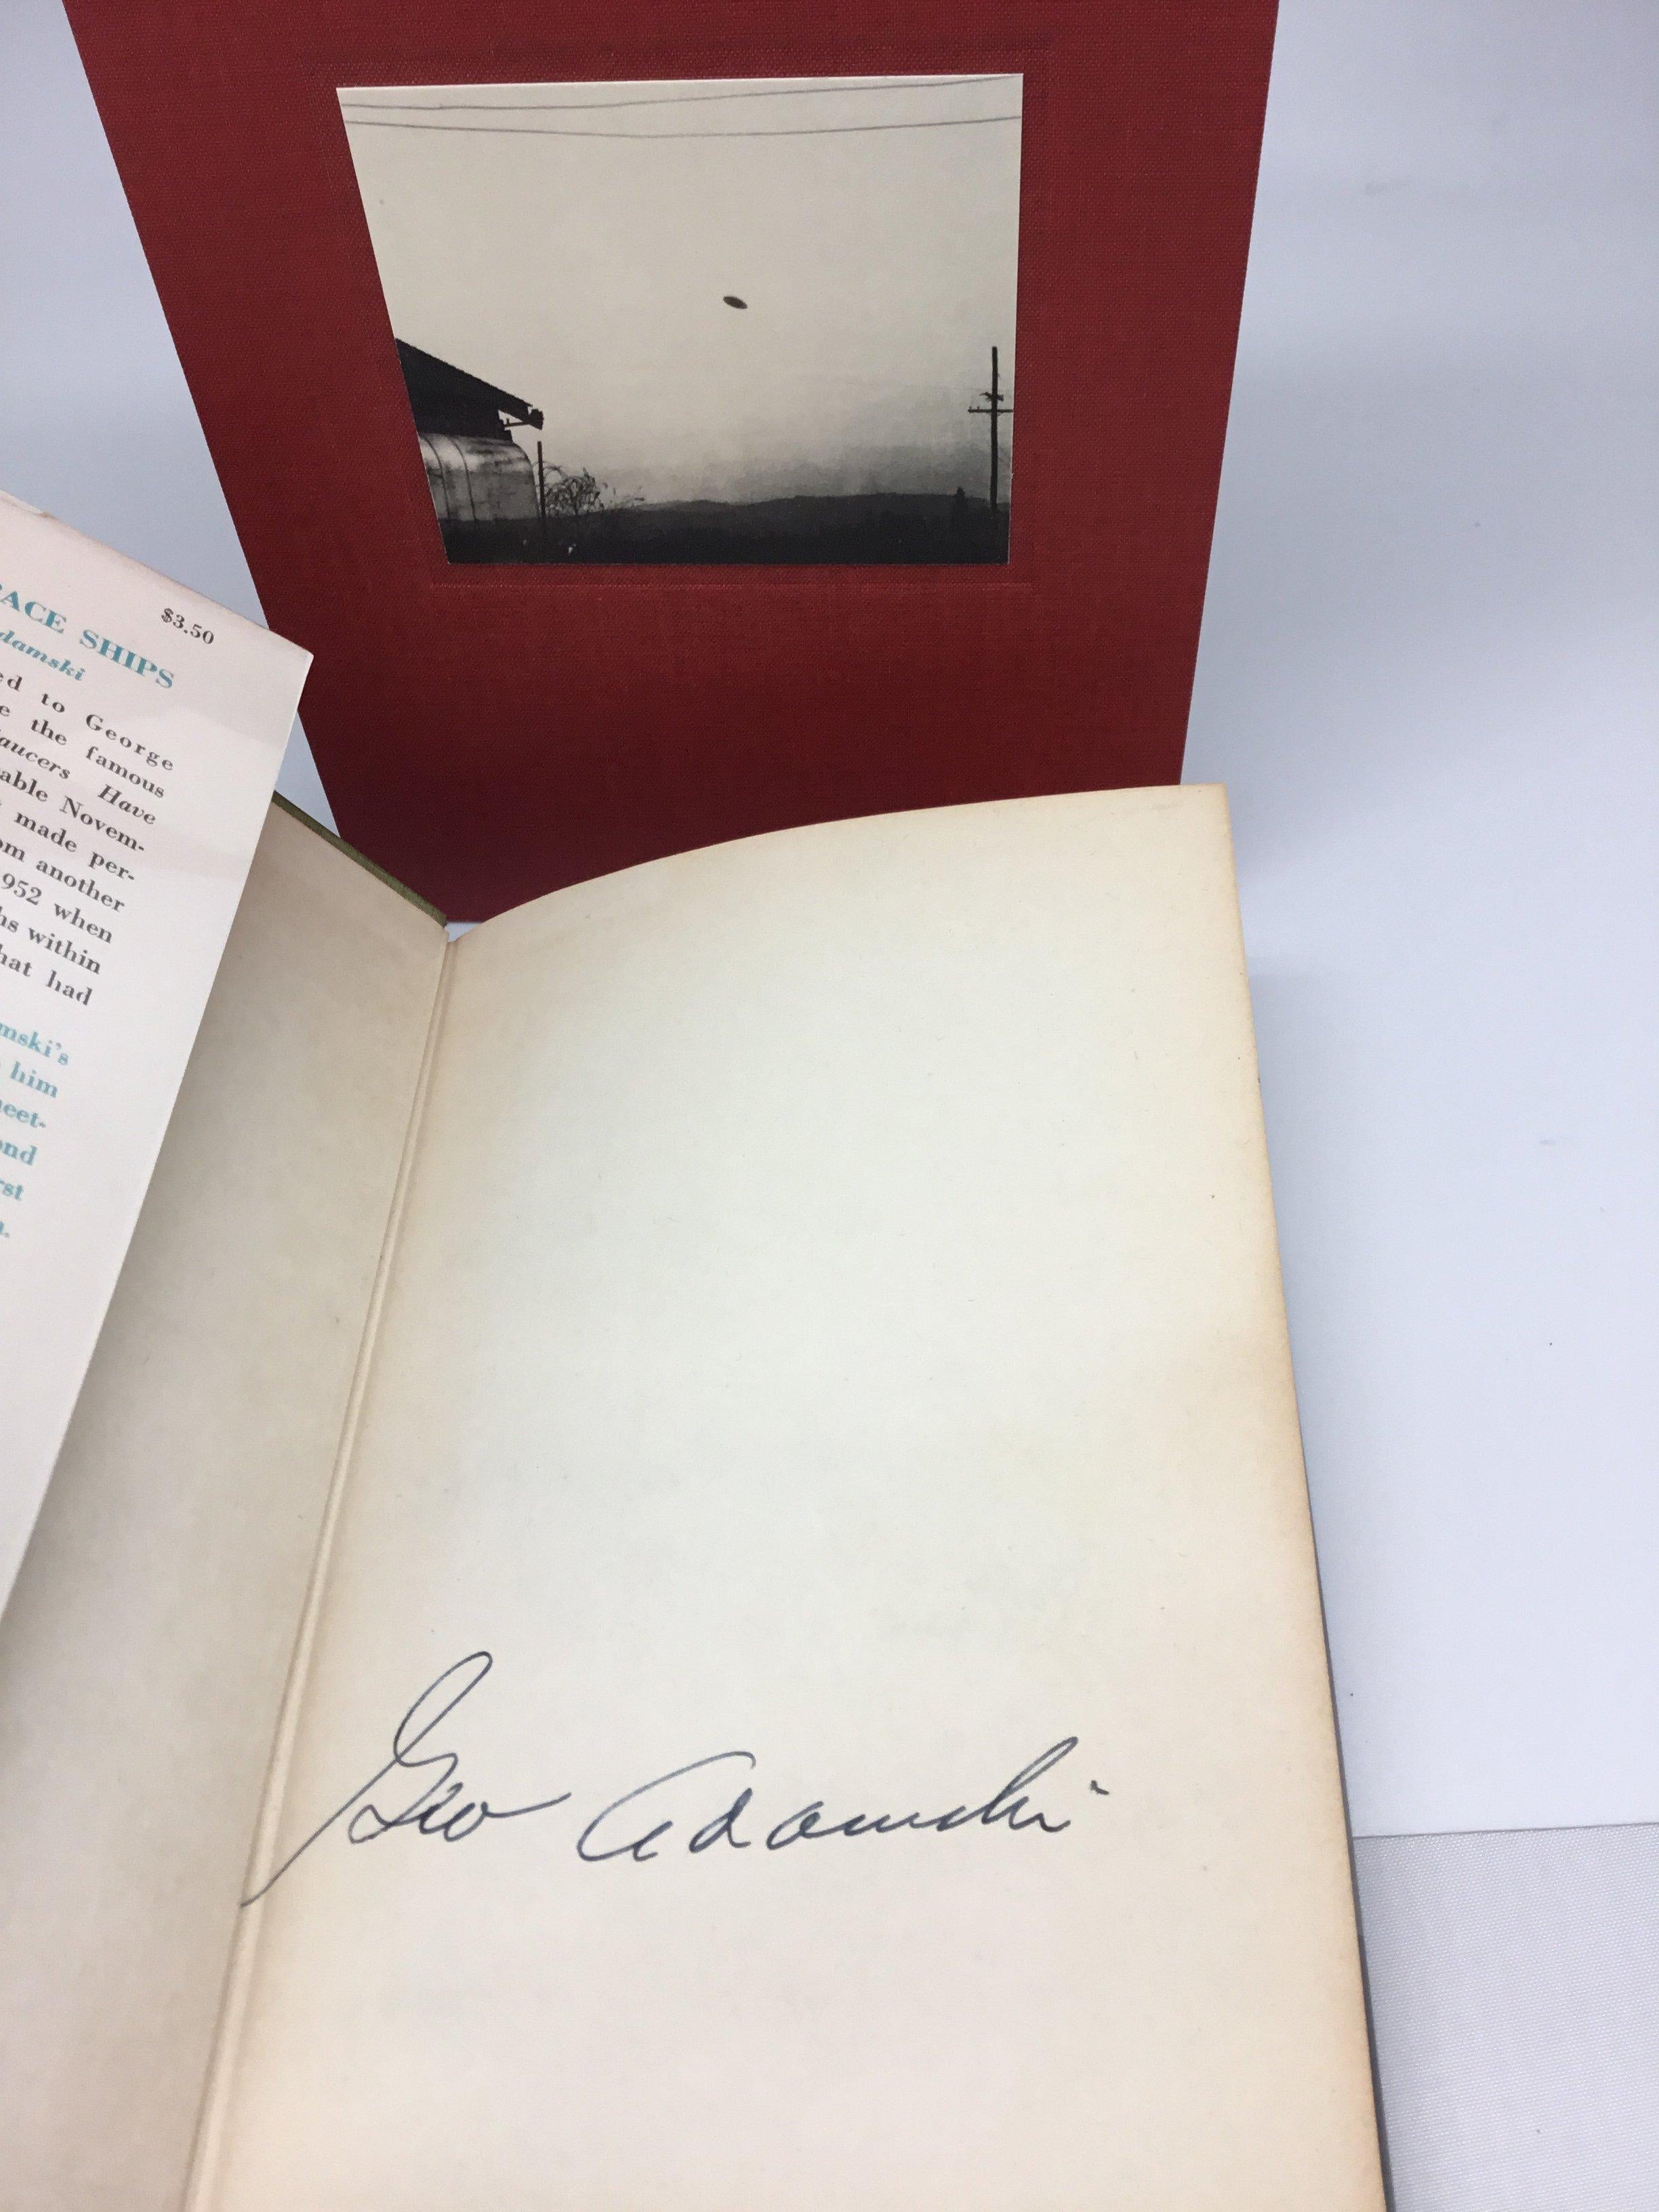 Adamski, George. Das Innere der Raumschiffe. New York: Abelard-Schuman, 1955. Signierte Erstausgabe, dritter Druck. Original Schutzumschlag. Untergebracht in einem maßgefertigtem Schuber.

Sind wir allein im Universum? Diese zeitlose Frage wird